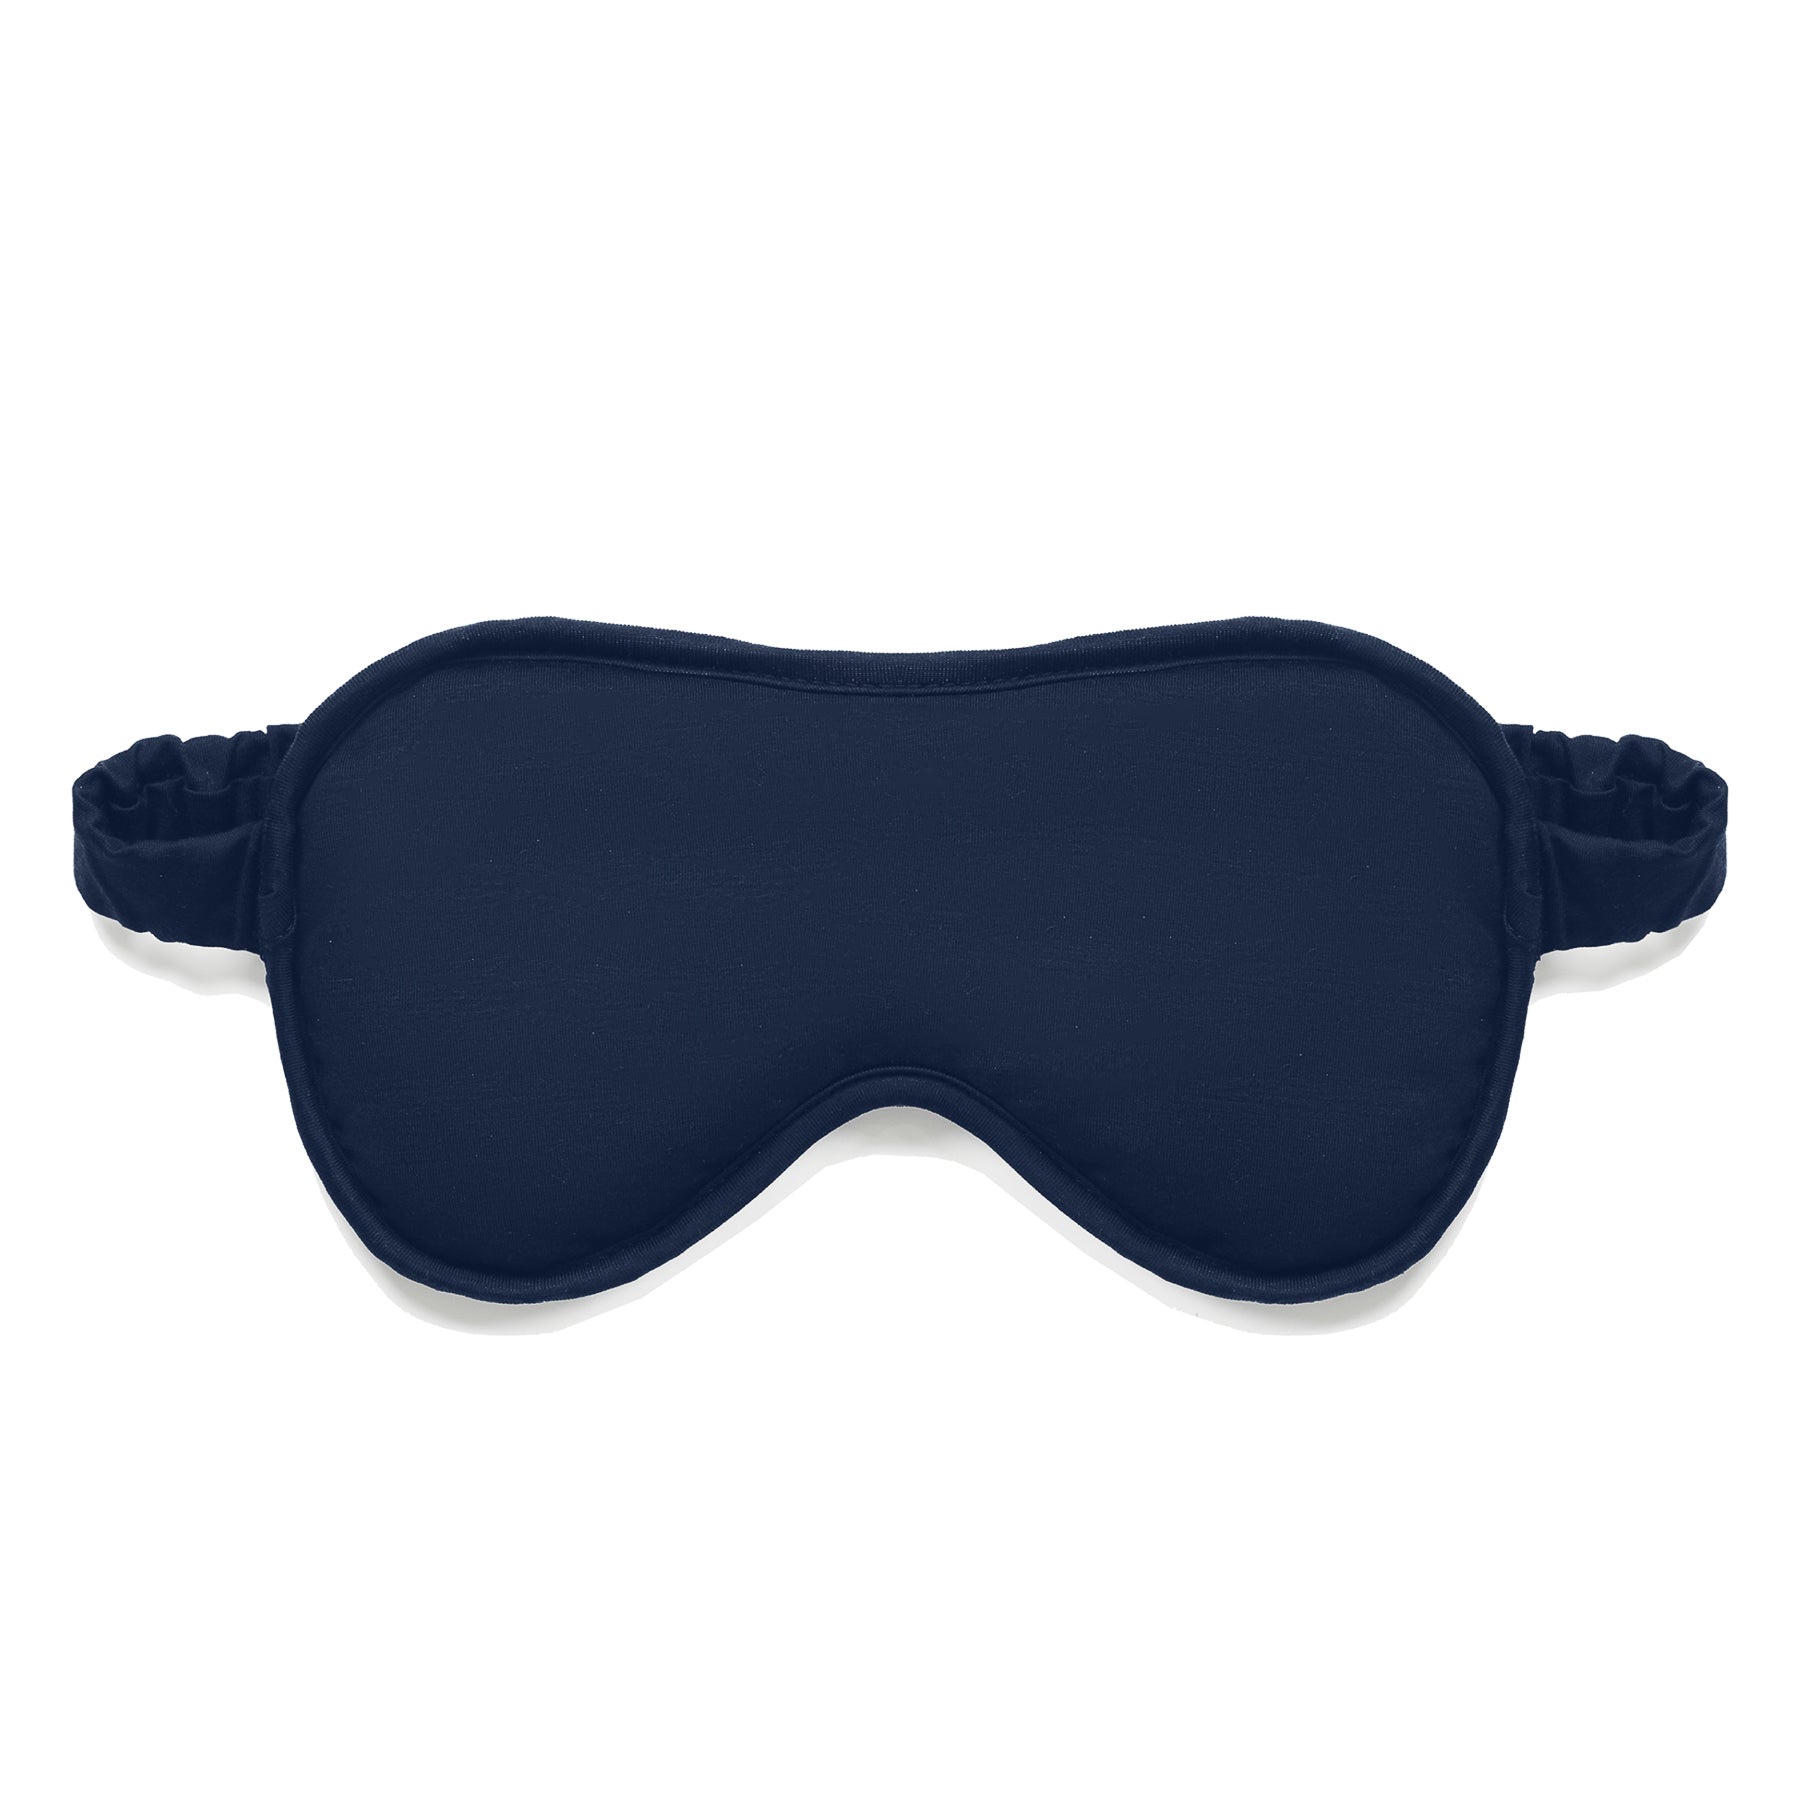 Gift set cooling slip dress mask || Navy blue